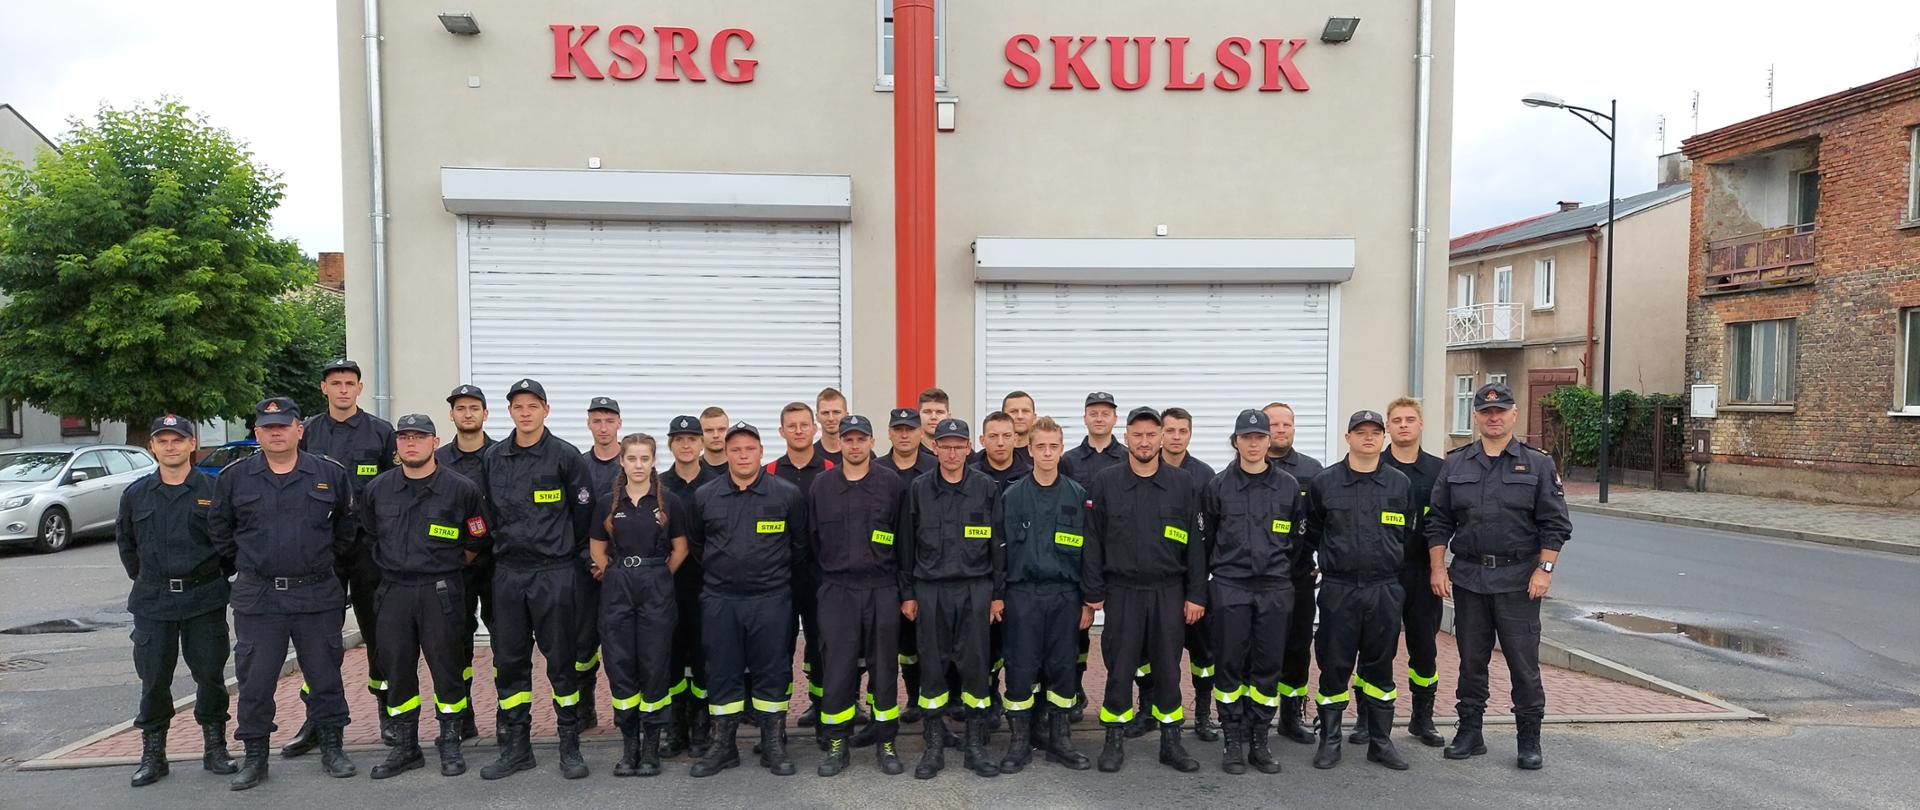 Zdjęcie przedstawia druhów OSP biorących udział w szkoleniu podstawowym, stojących na tle remizy z dwoma bramami garażowymi oraz napisem KSRG Skulsk.